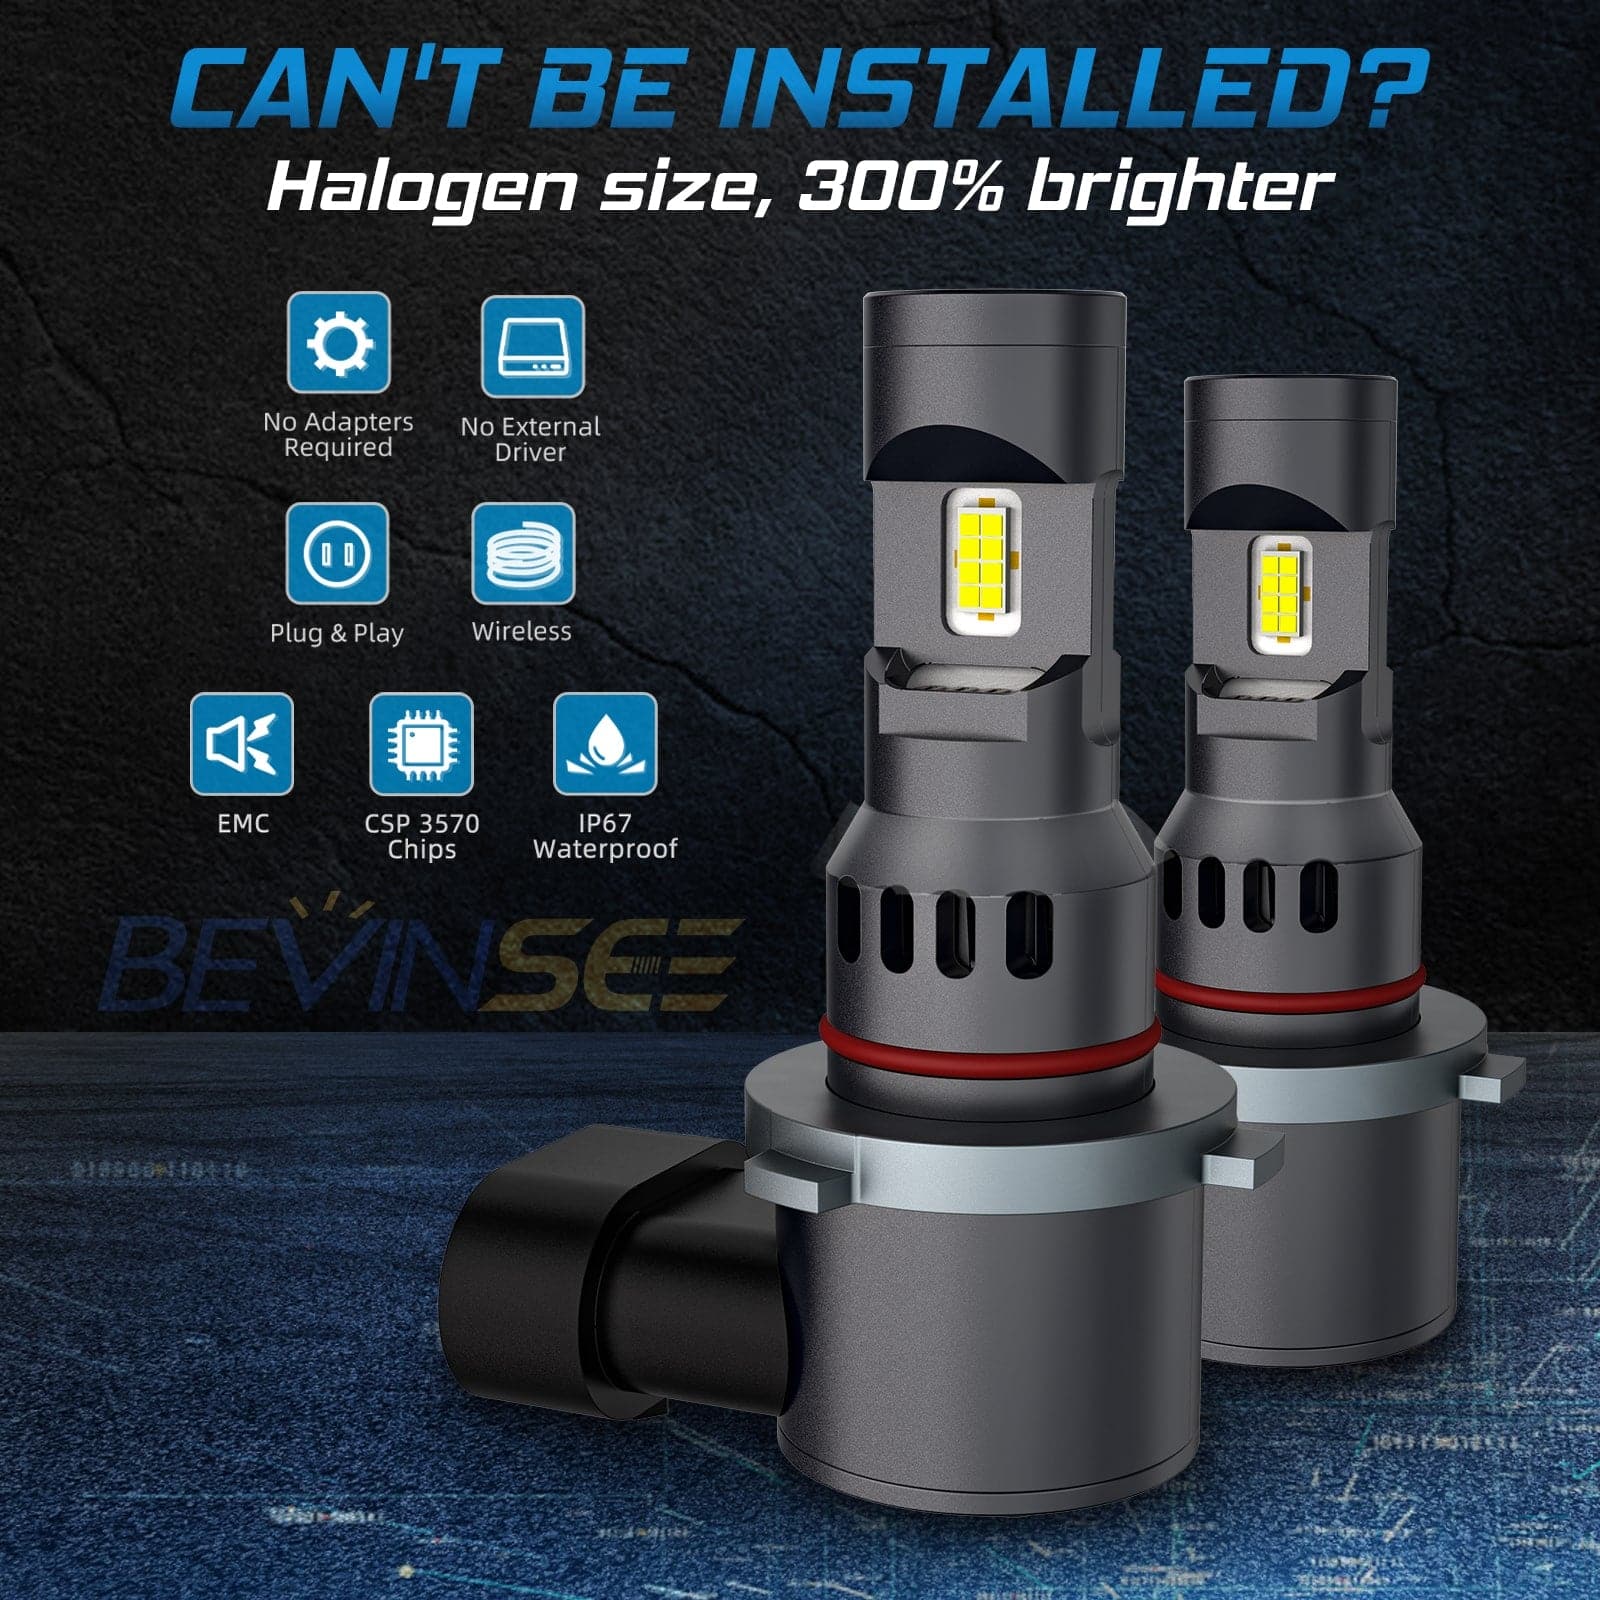 BEVINSEE Z25 H10 9145 Led Headlight Fog Light Bulbs Plug & Play 1：1 Size